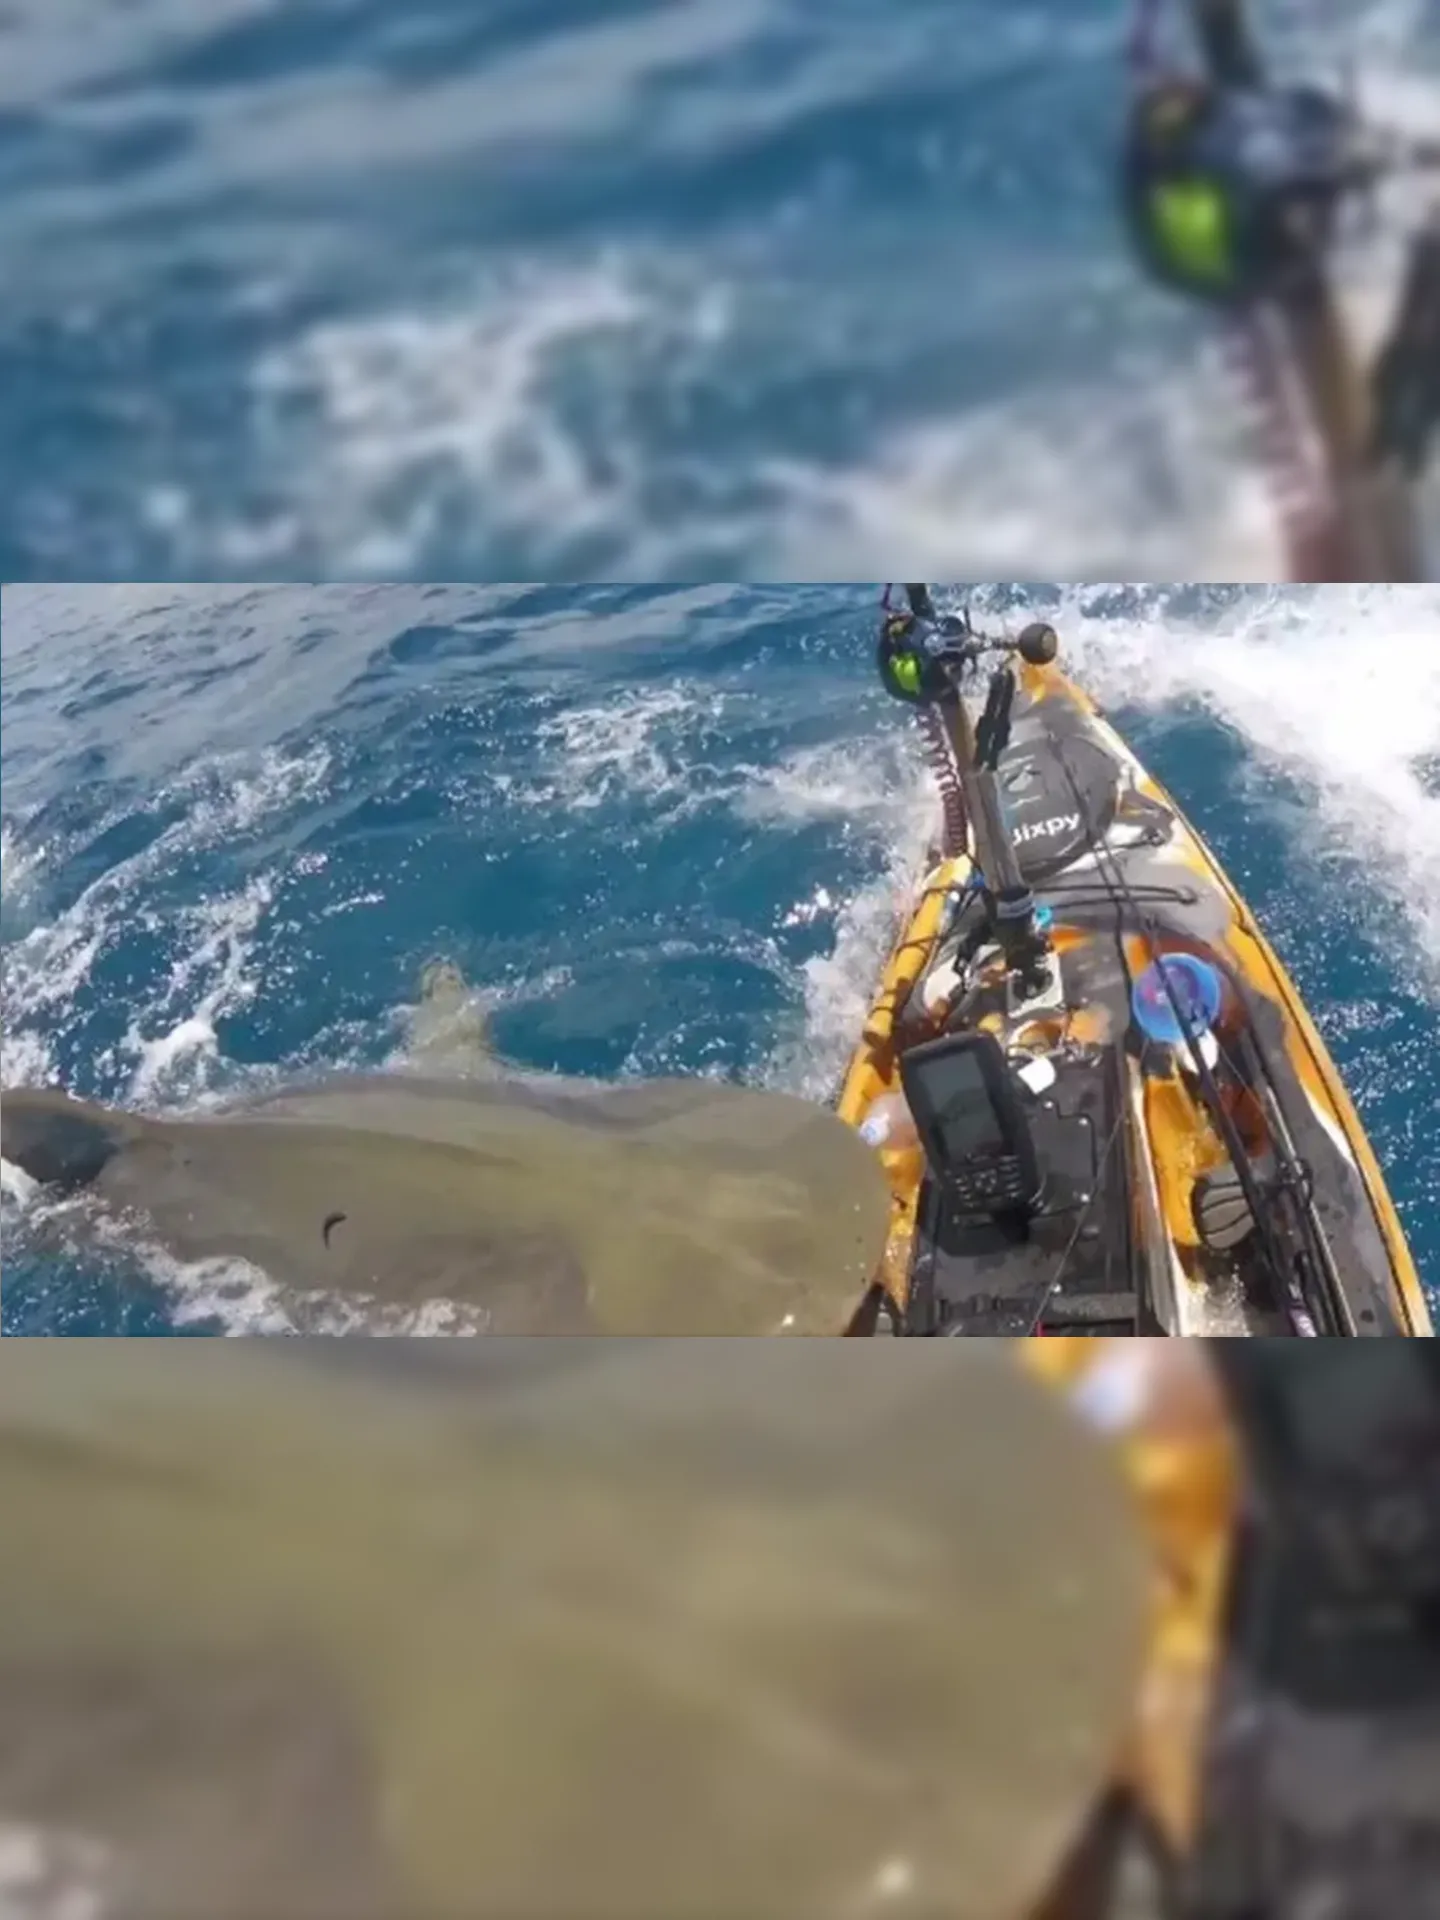 Com agilidade, o havaiano desferiu um chute na cabeça do tubarão